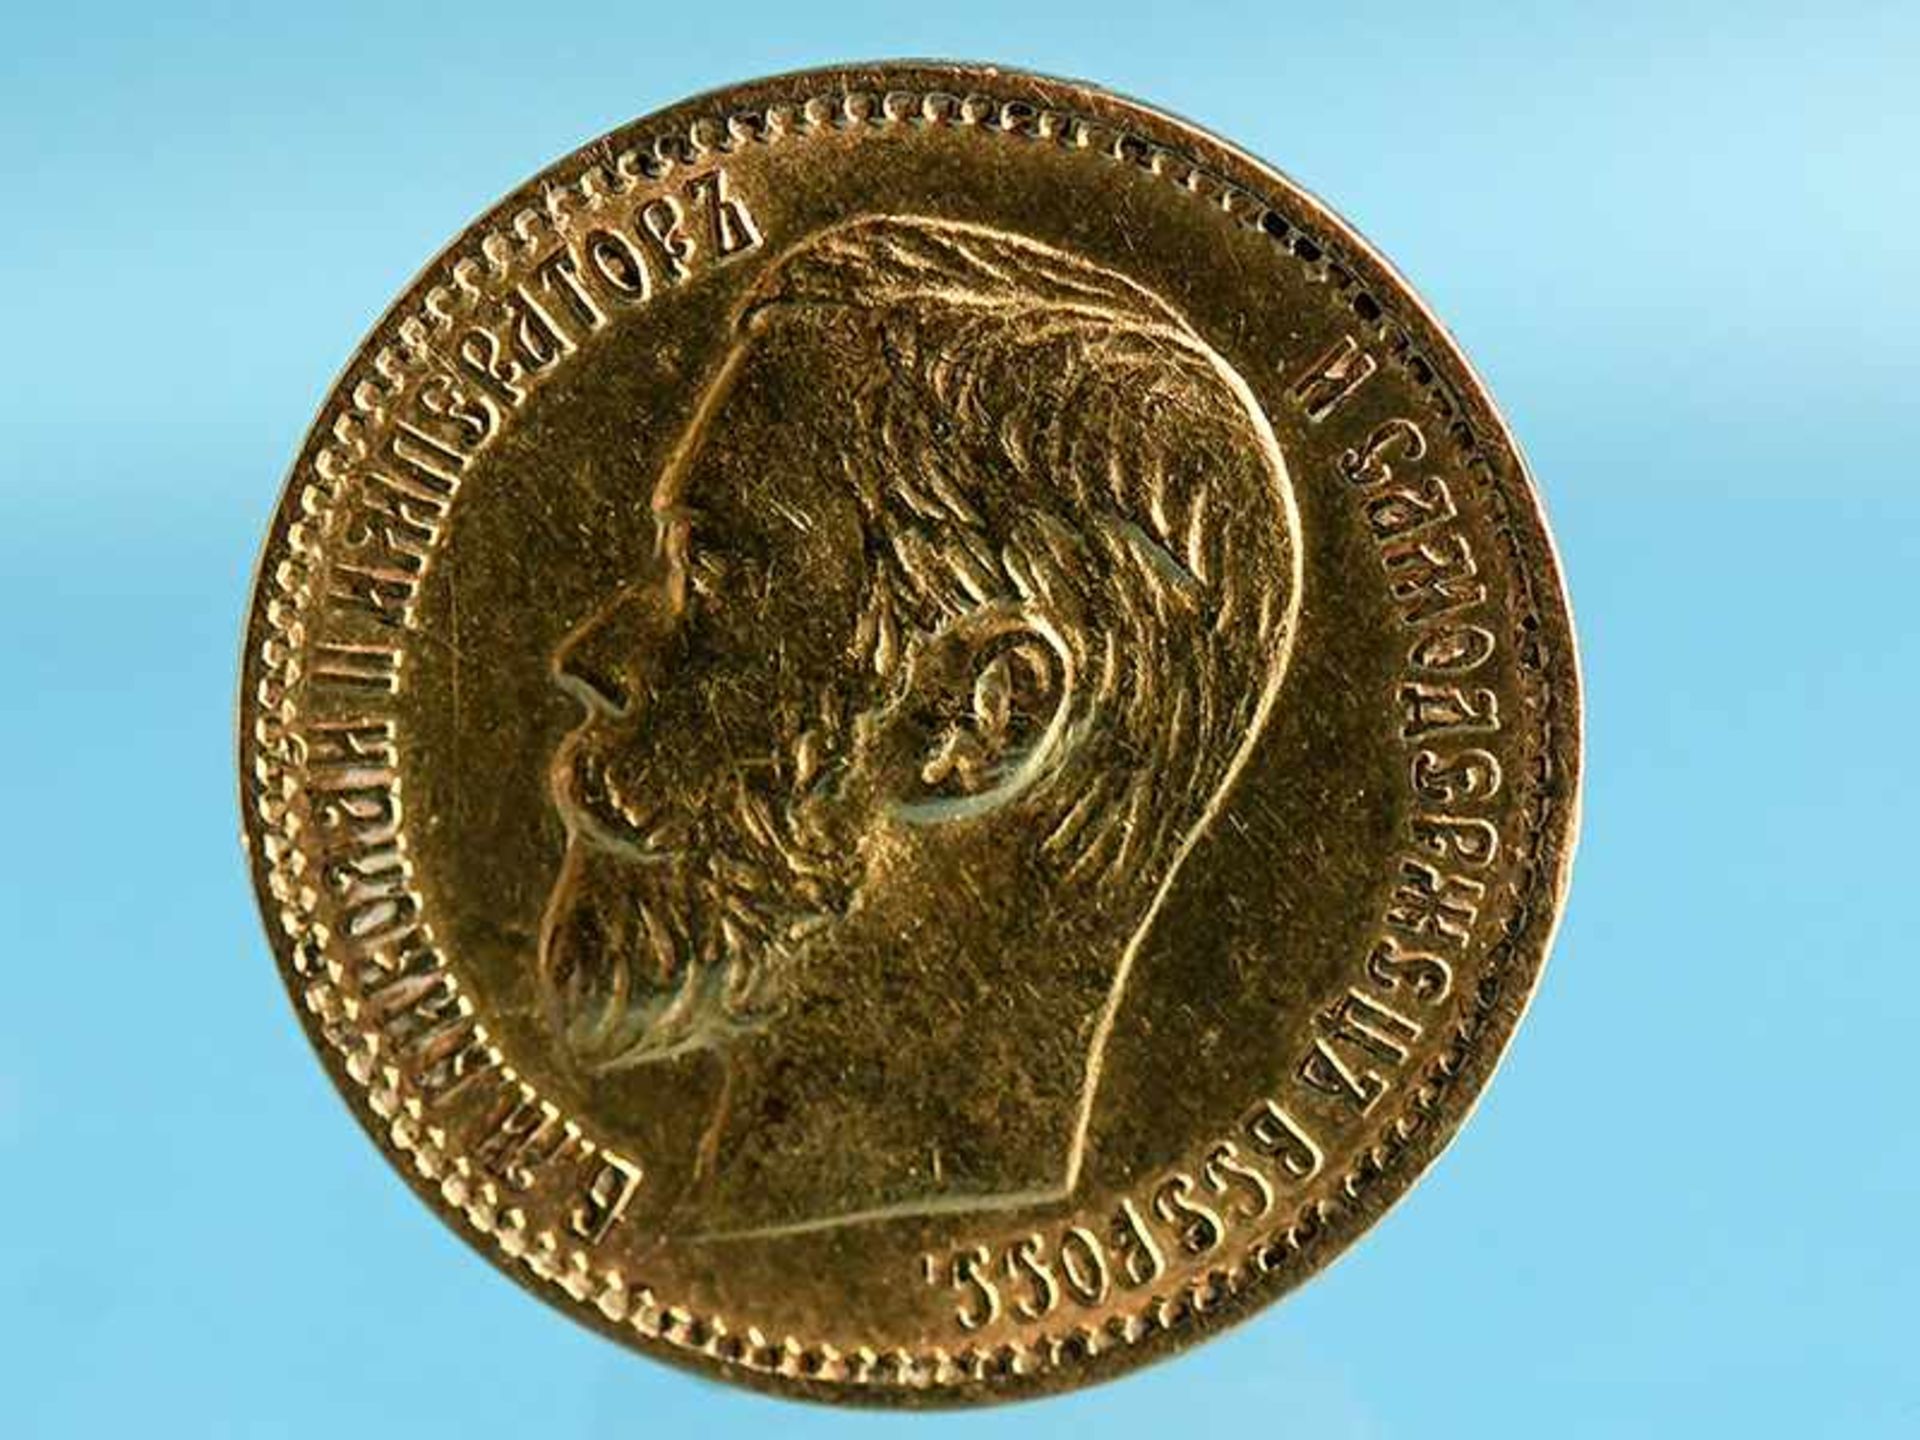 Goldmünze "5 Rubel", Russland (Nikolaus II./ 1894 - 1917), 1898. 900/-Gold, ca. 4,28 g. Mit